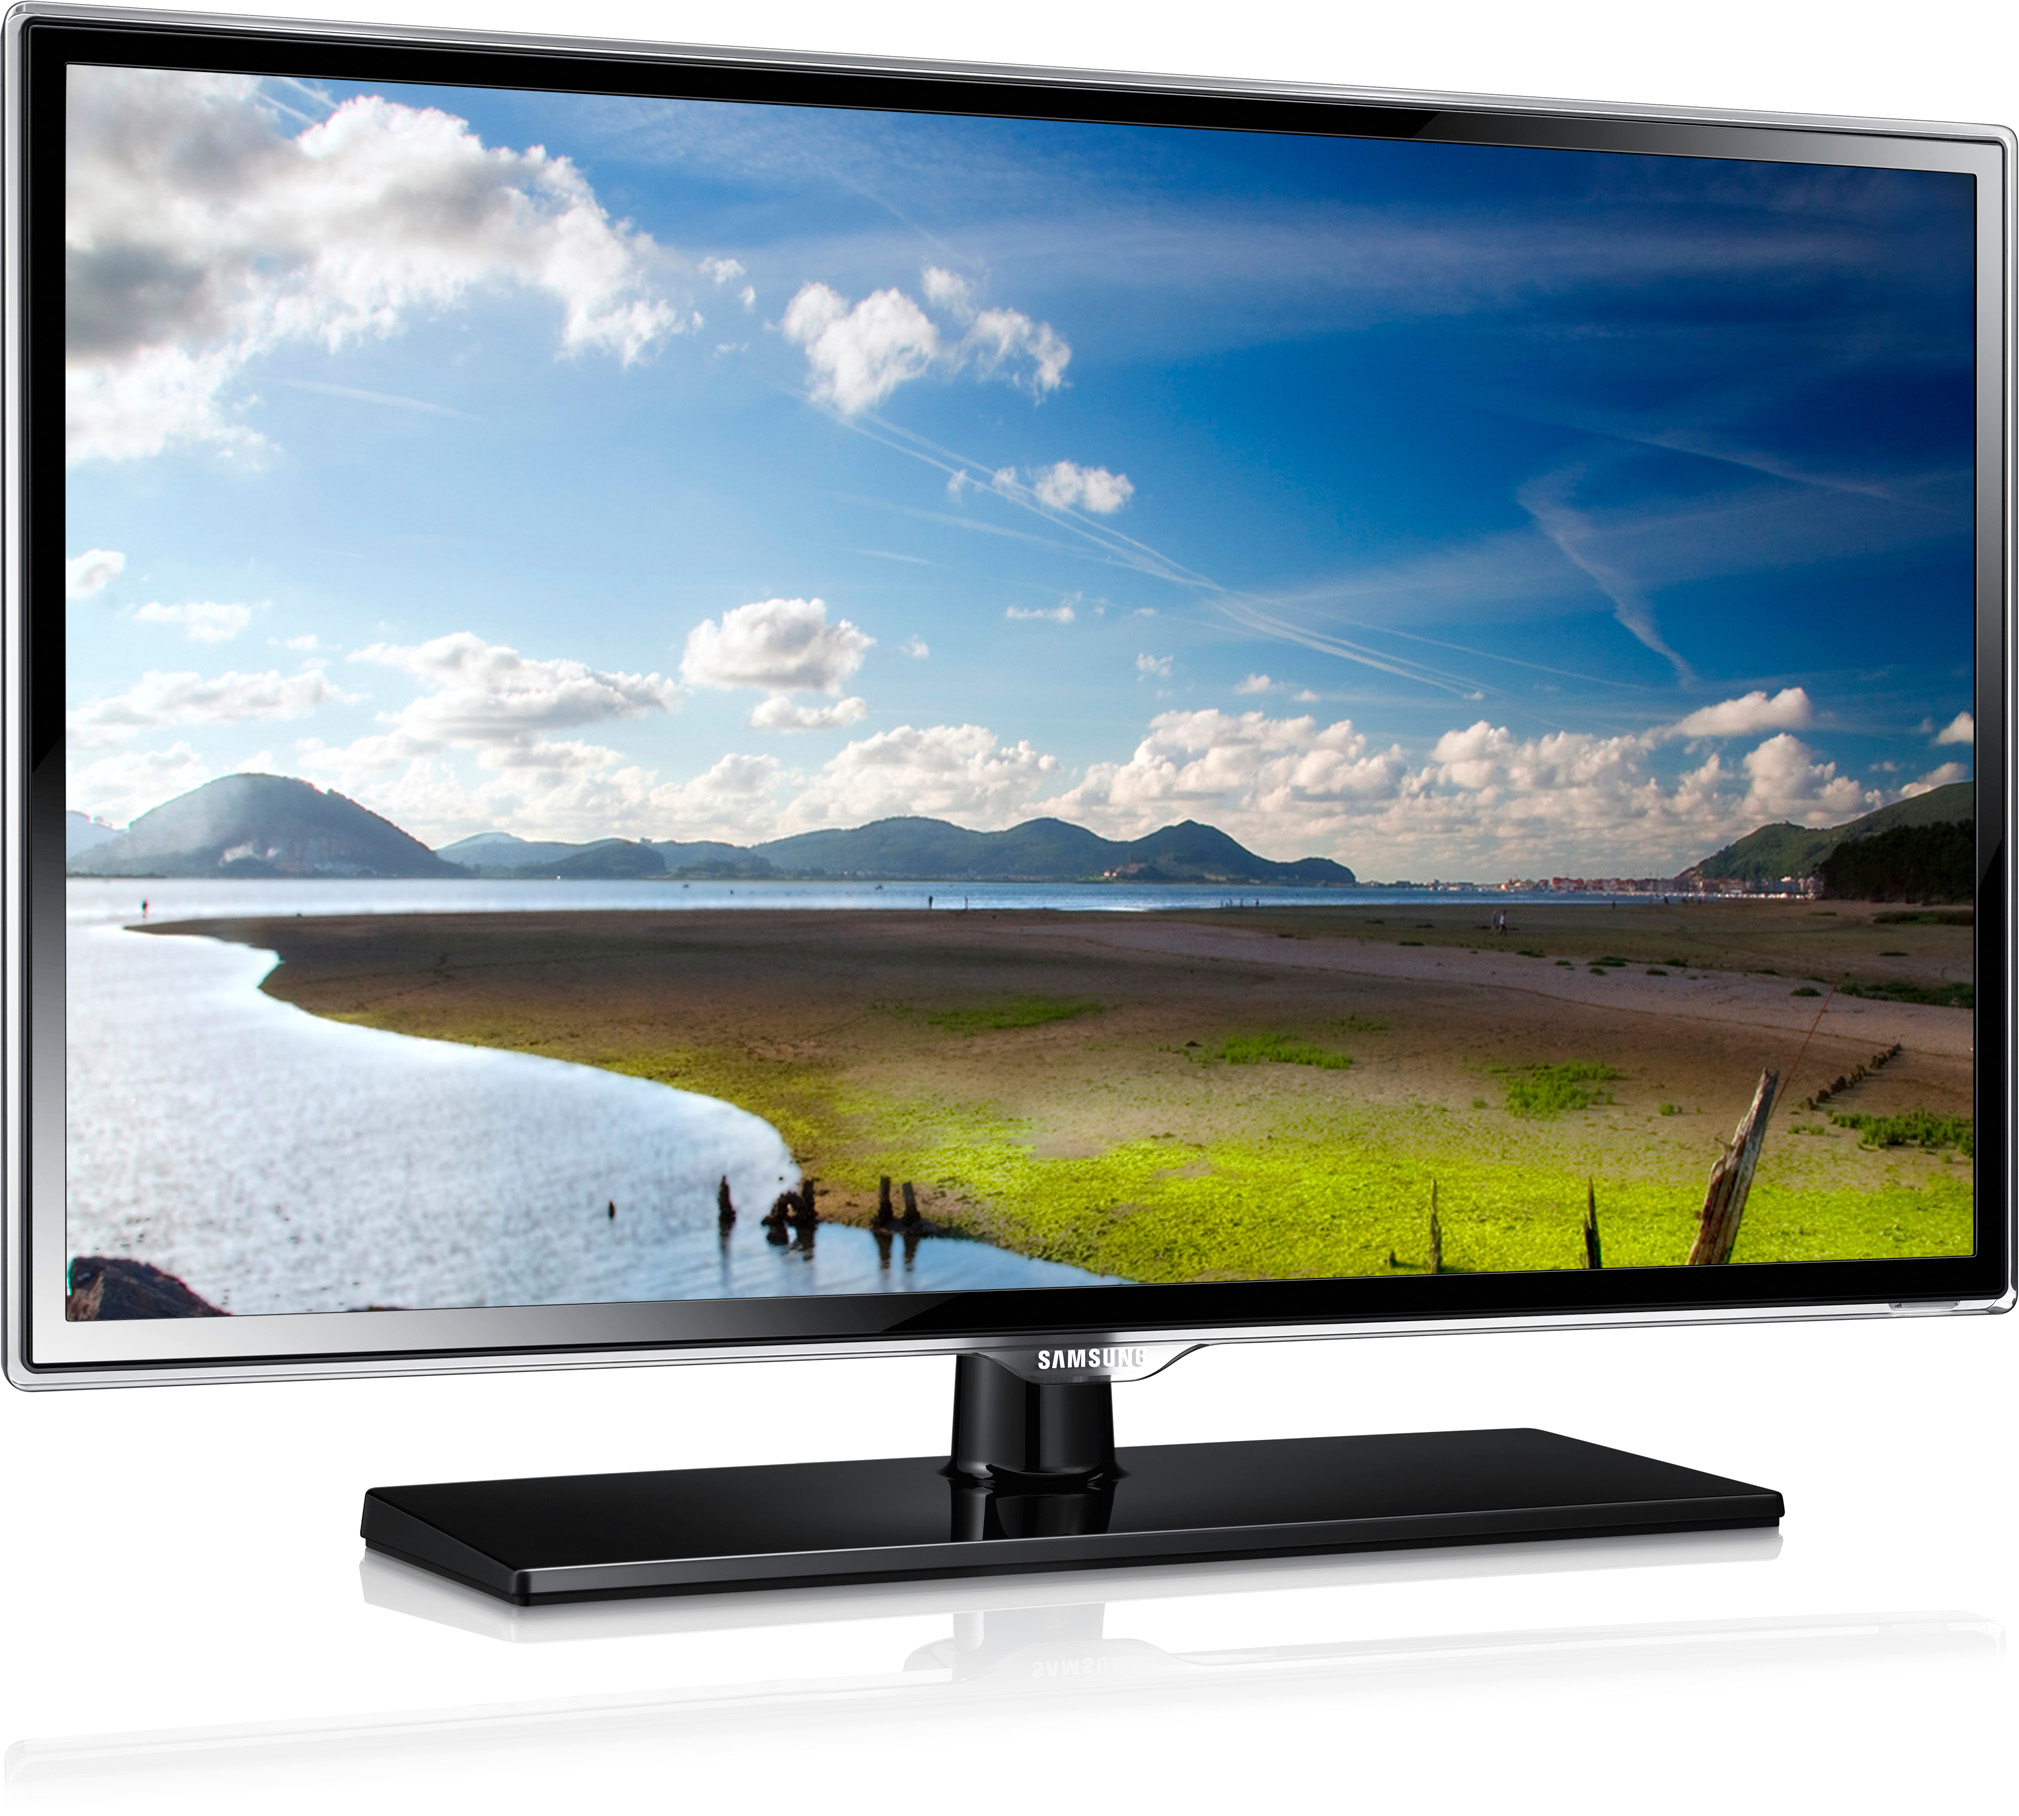 Купить телевизор в омске недорого. Samsung ue32es5507. Samsung ue50es5507k. Samsung 32k6000. UE 32c600rw.